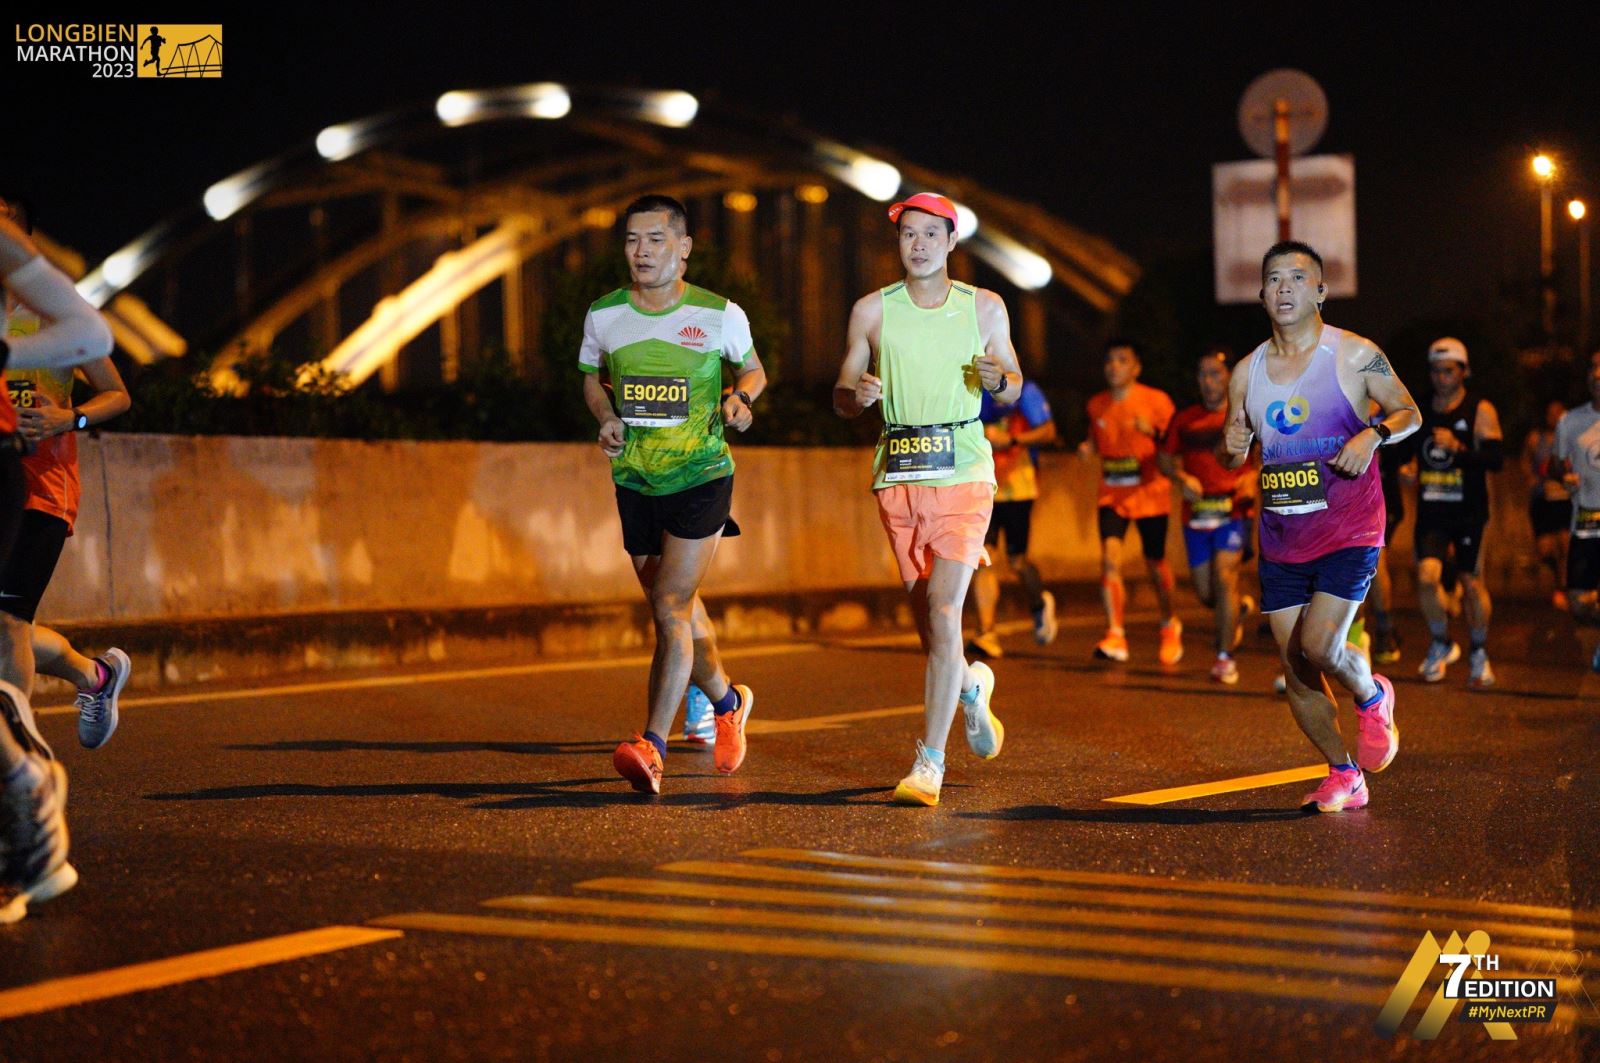 CLB Hà Đô Runners chinh phục giải chạy Longbien Marathon 2023